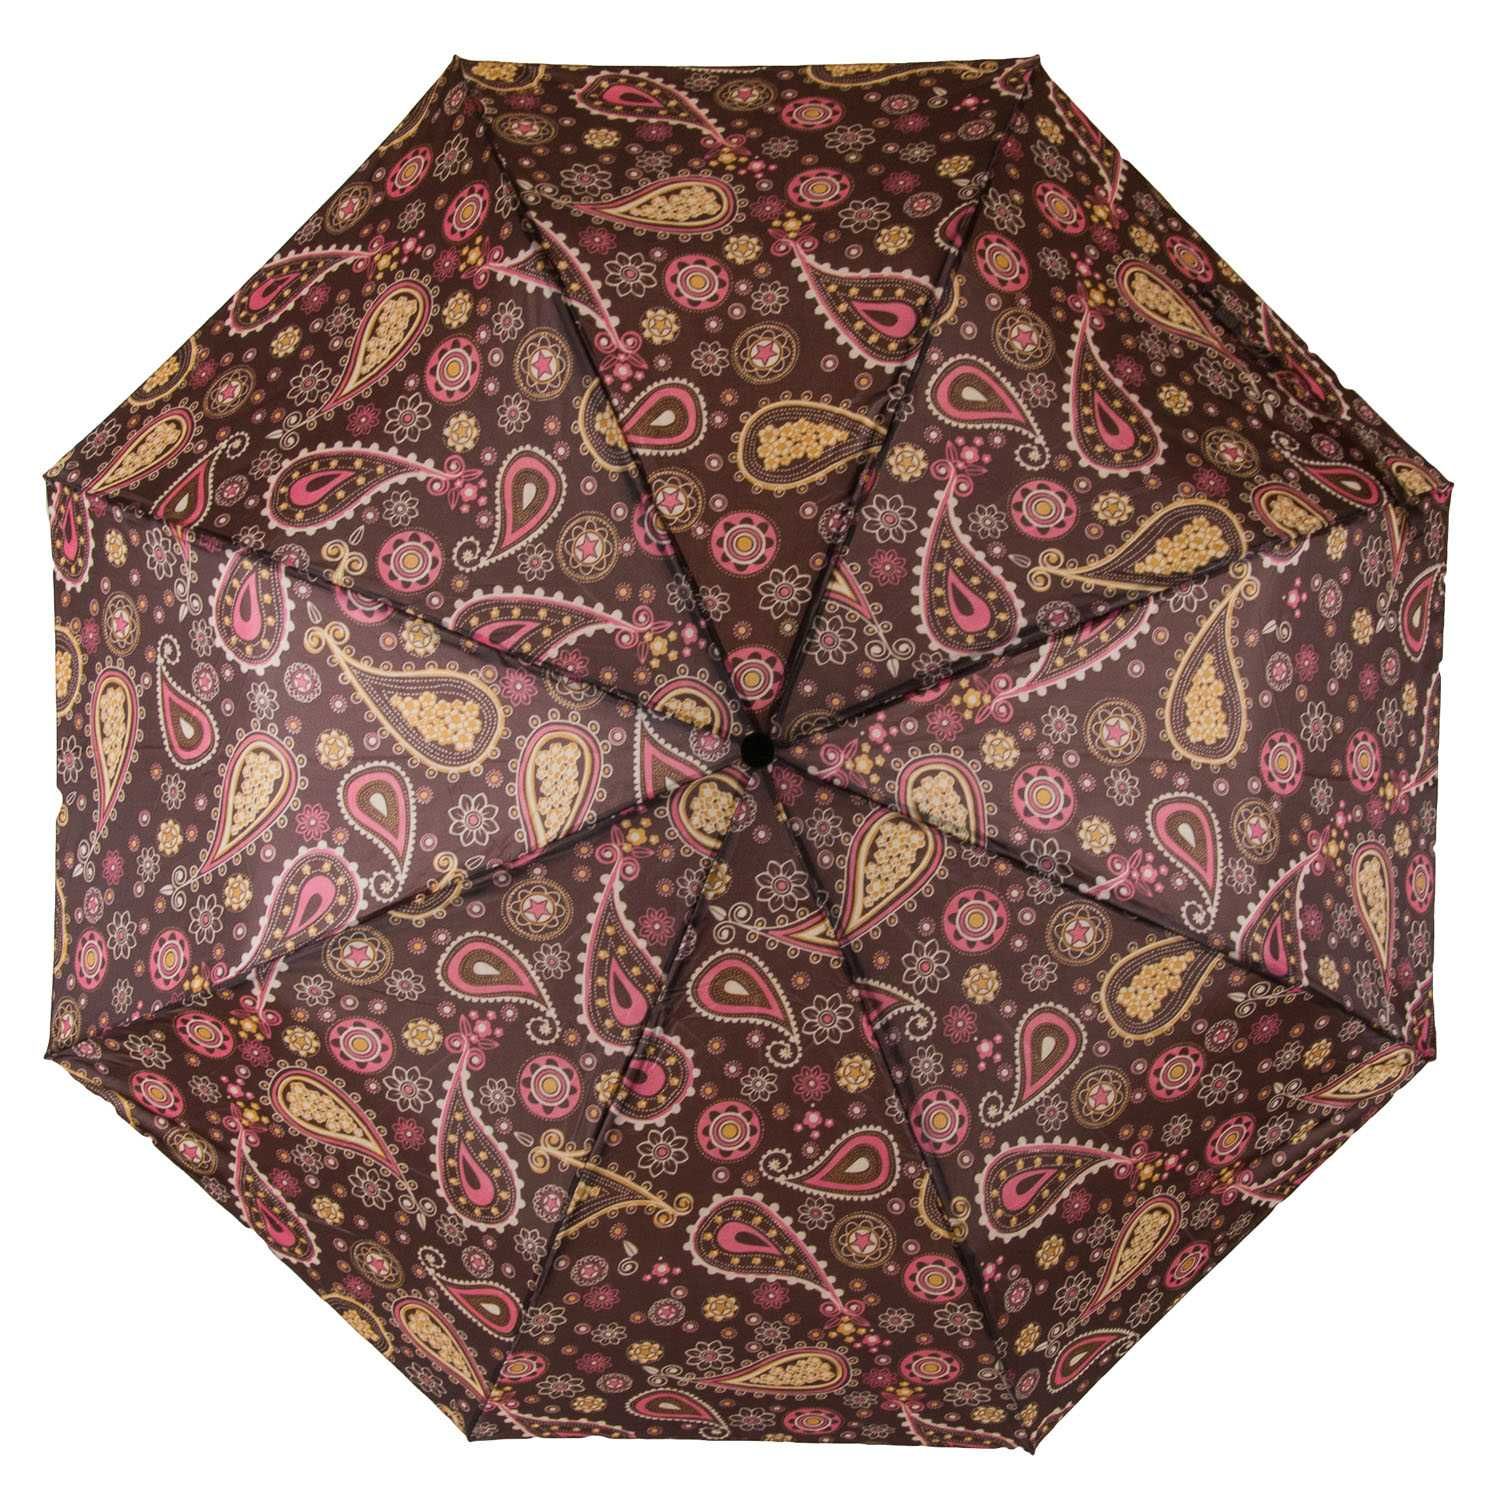 Жіноча парасолька